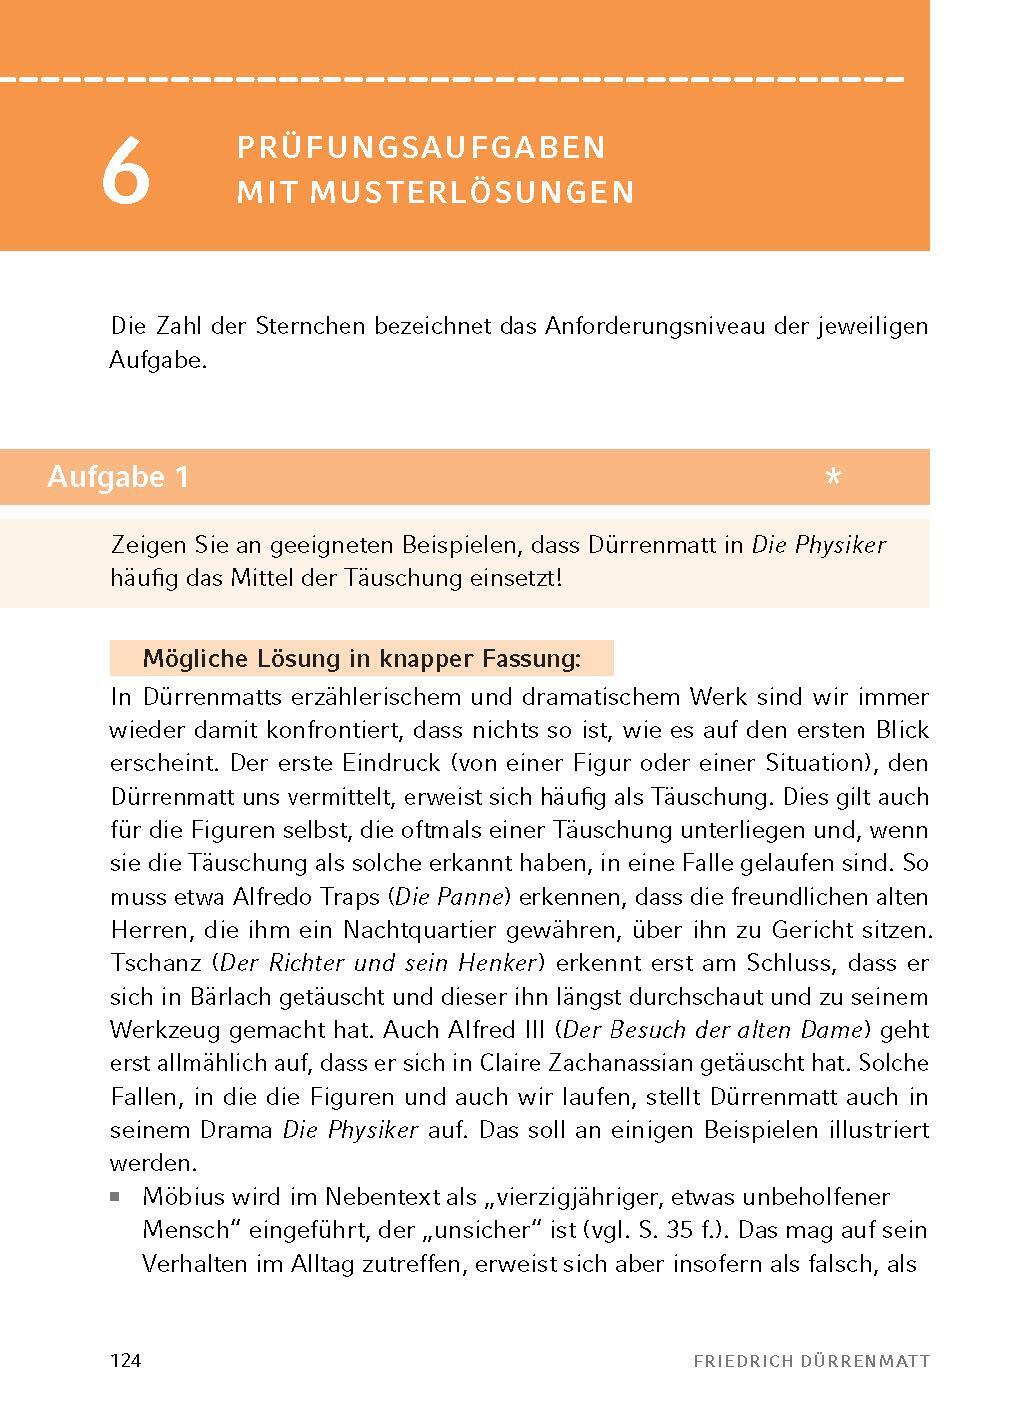 Bild: 9783804420755 | Die Physiker - Textanalyse und Interpretation | Friedrich Dürrenmatt